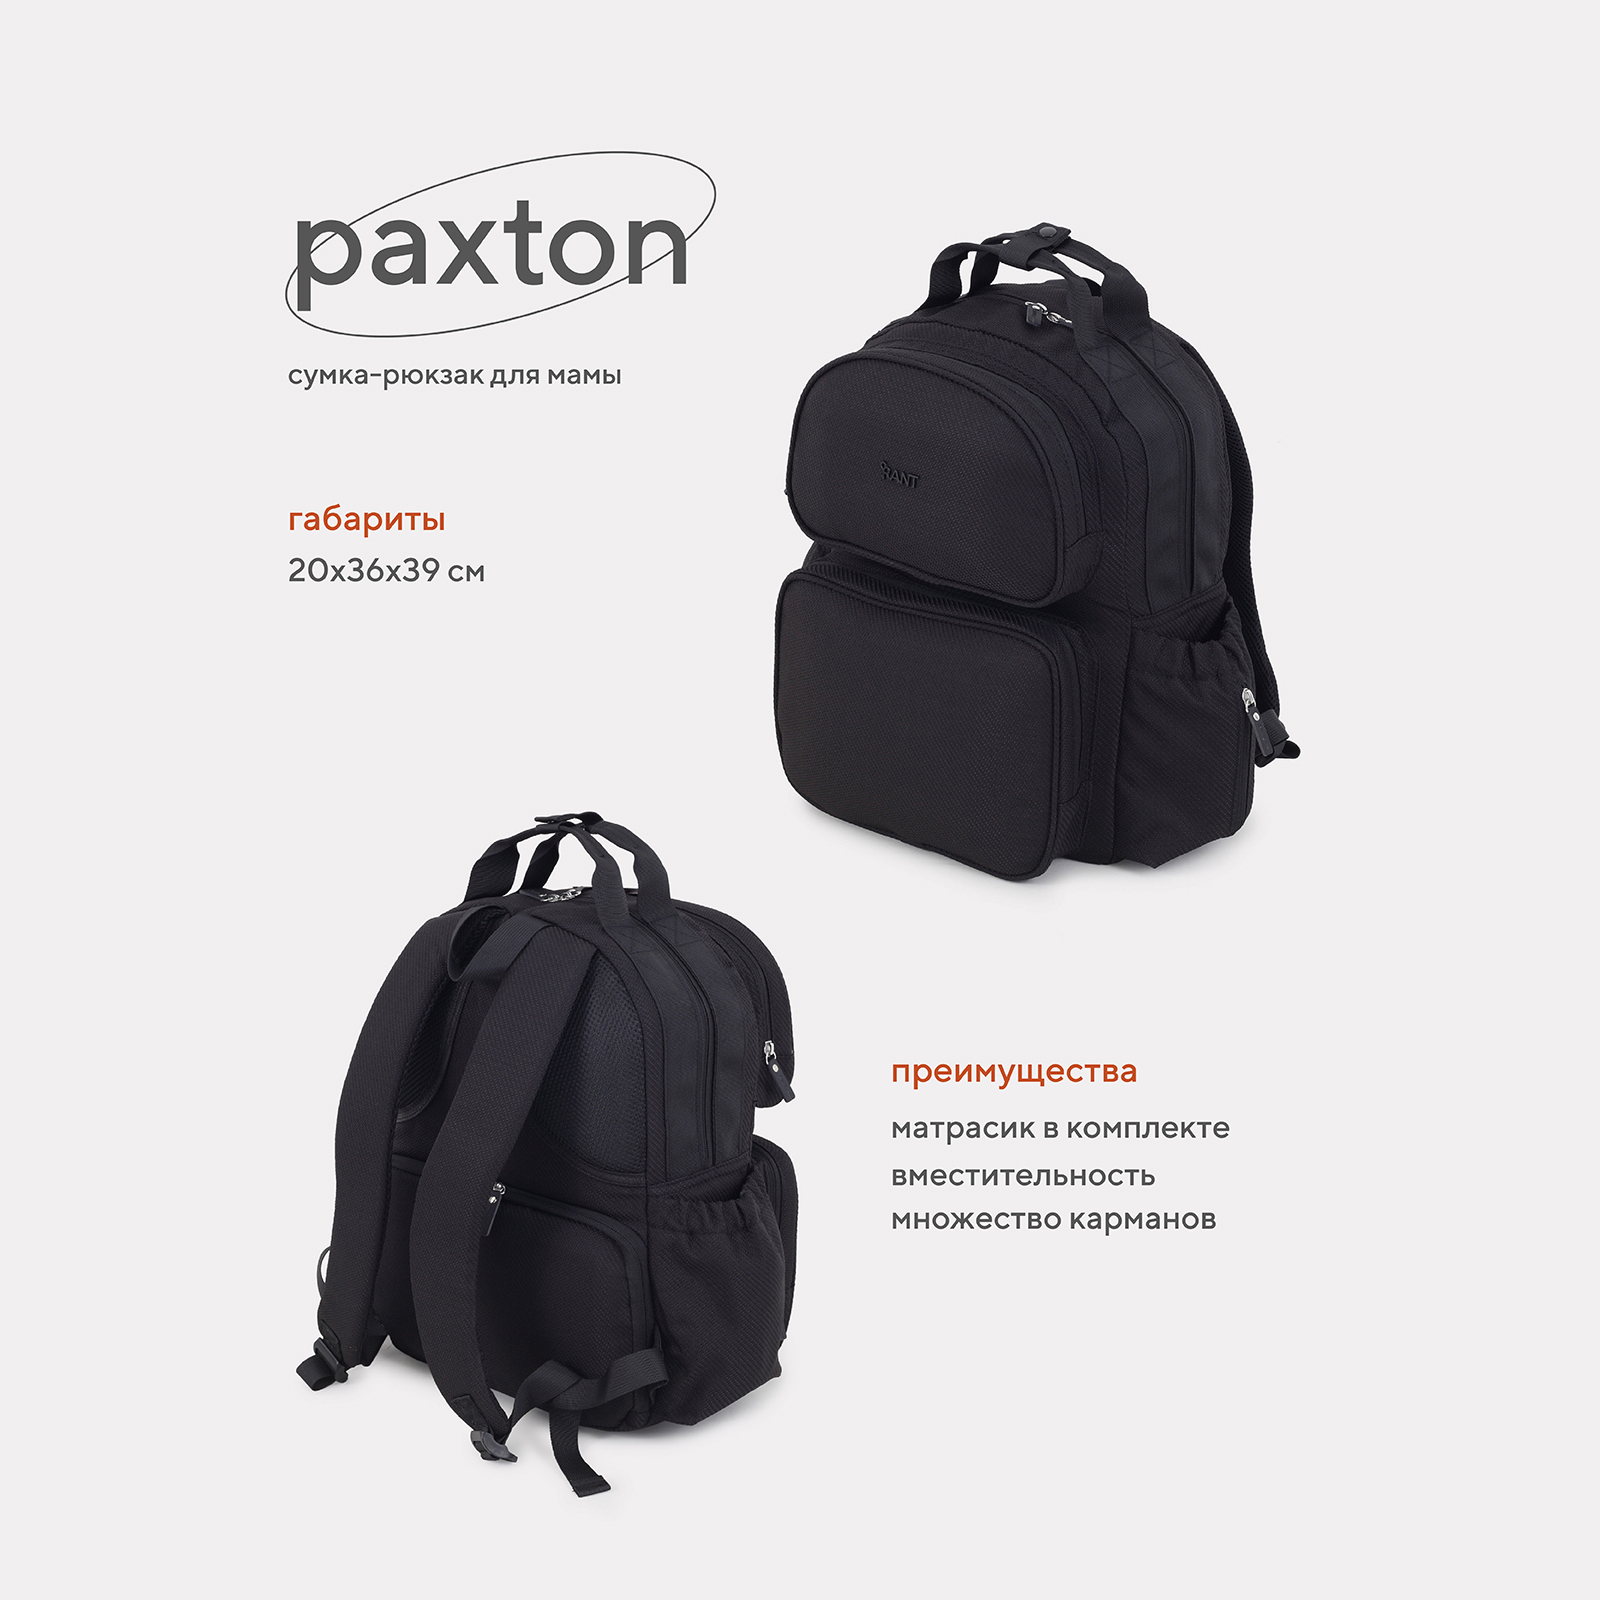 Сумка-рюкзак для мамы RANT Paxton RB008 Black сумка рюкзак для мамы forest kids tarde black ak789665